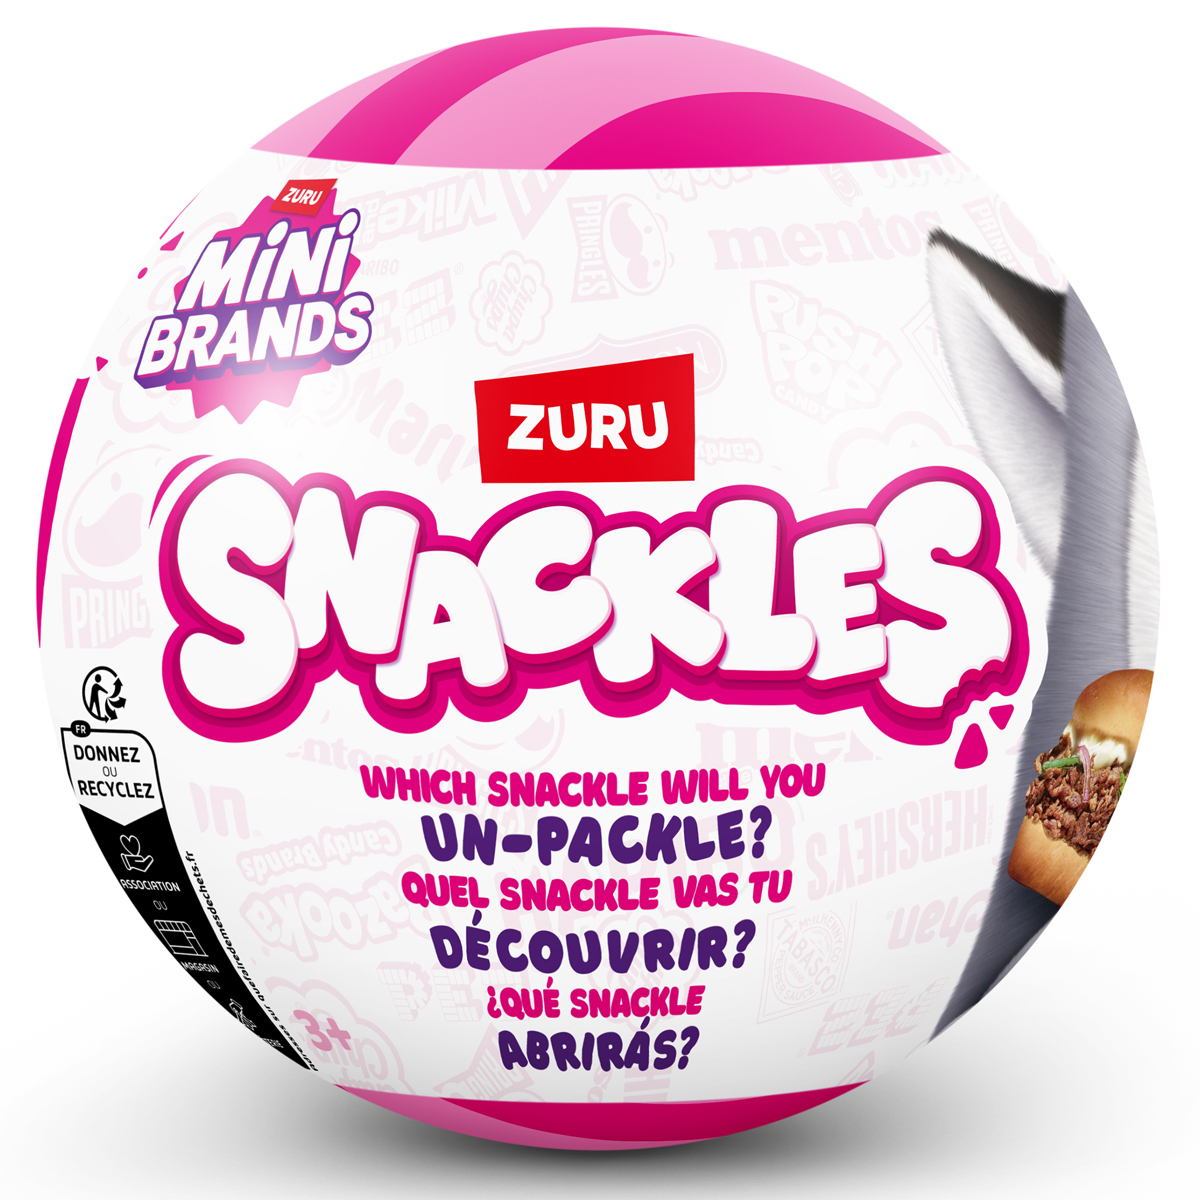 Zuru unpackles the Snackles